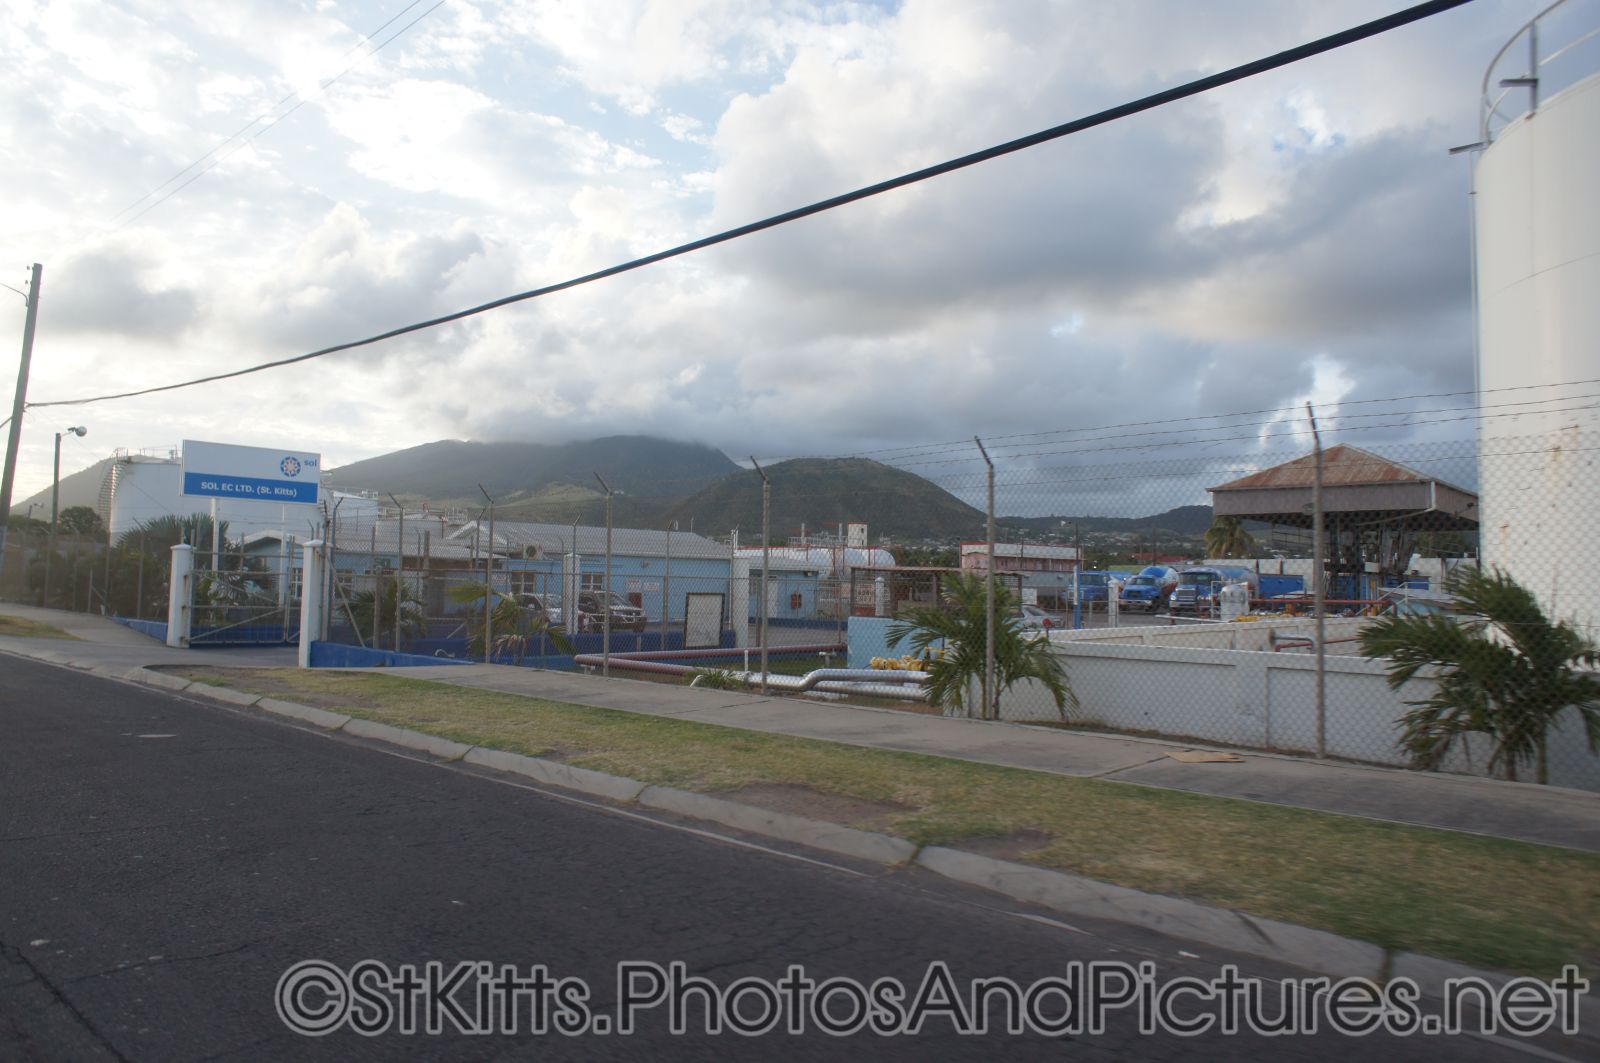 SOL EC LTD in St Kitts.jpg
